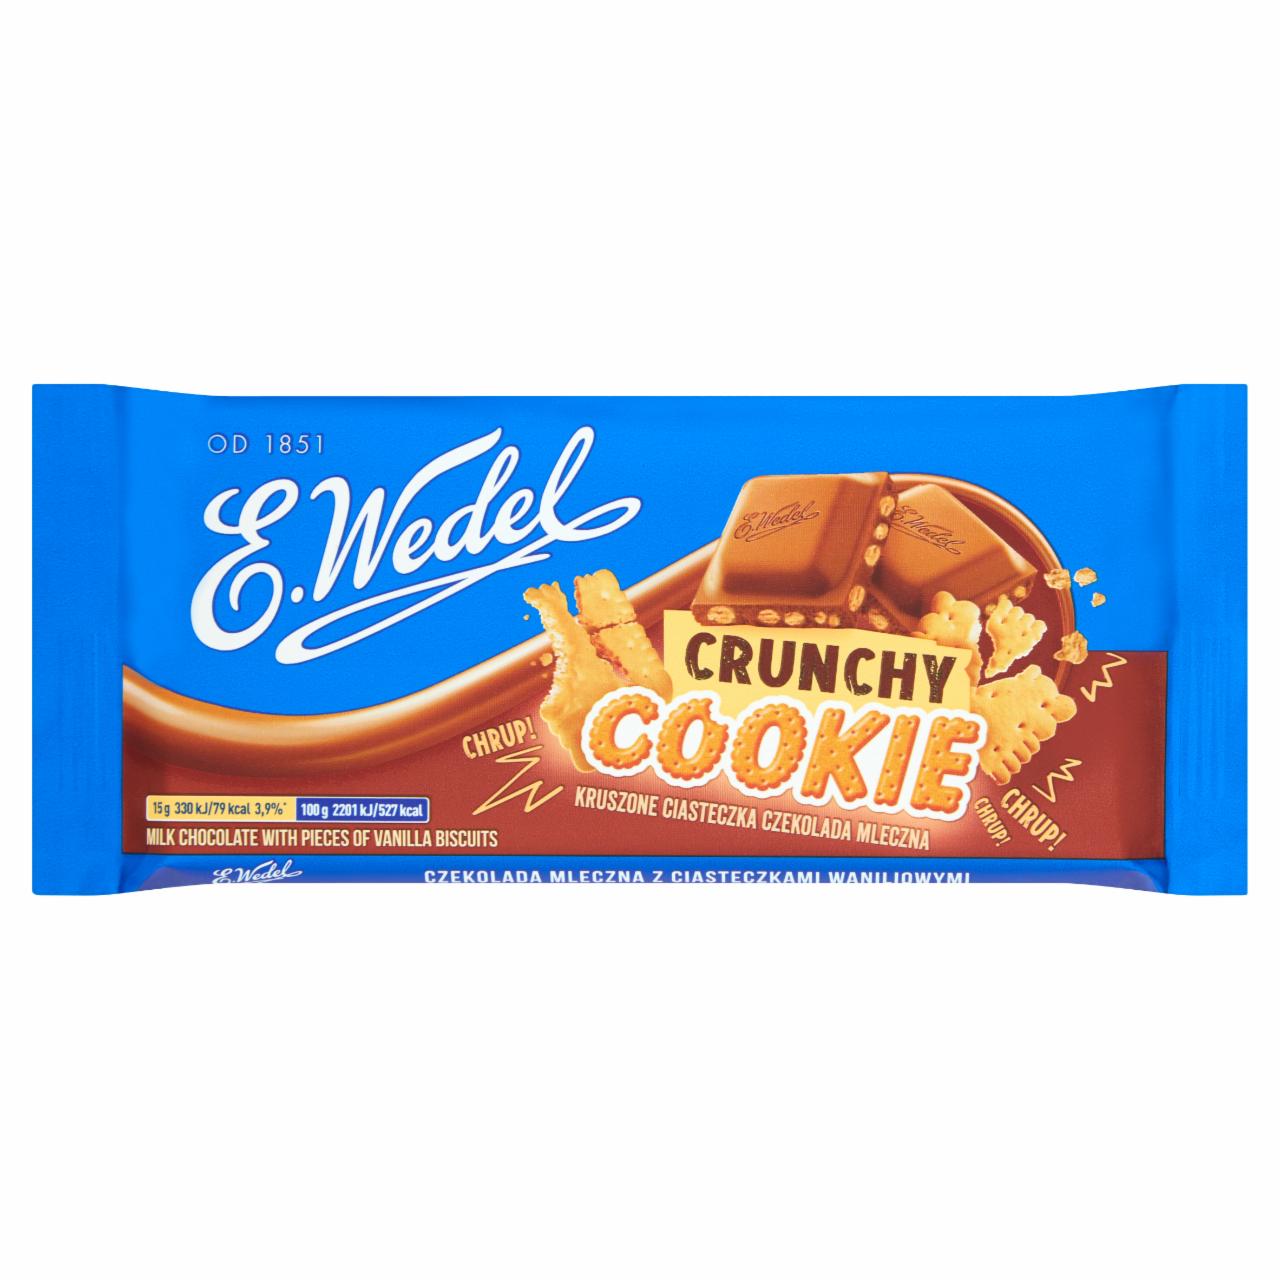 Zdjęcia - E. Wedel Crunchy Cookie Czekolada mleczna z ciasteczkami waniliowymi 90 g